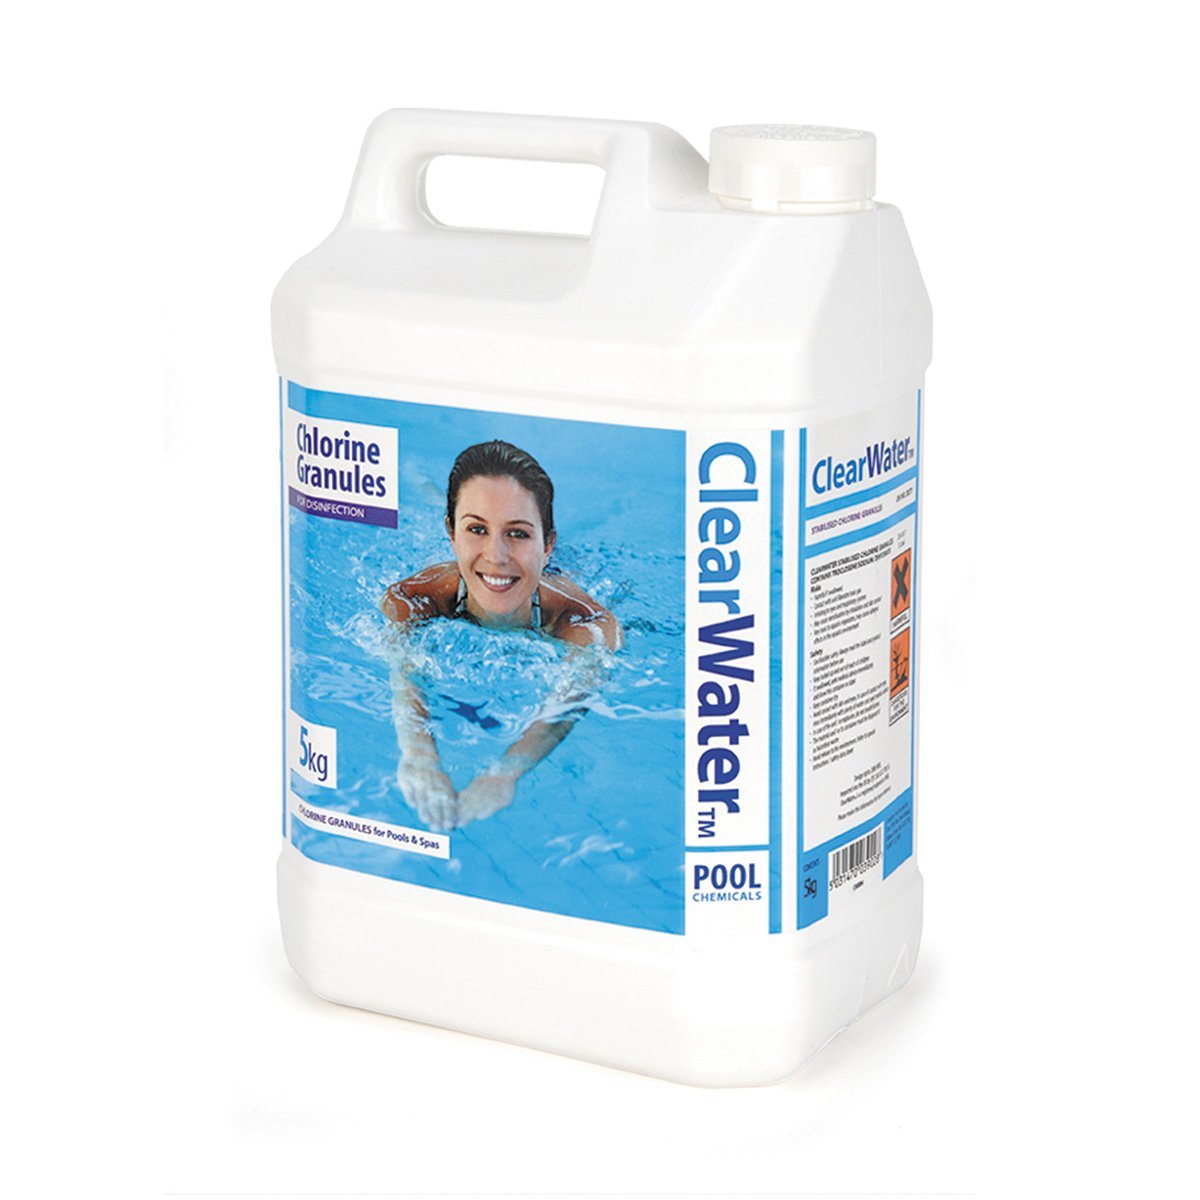 ClearwaterkgChlorineGranules